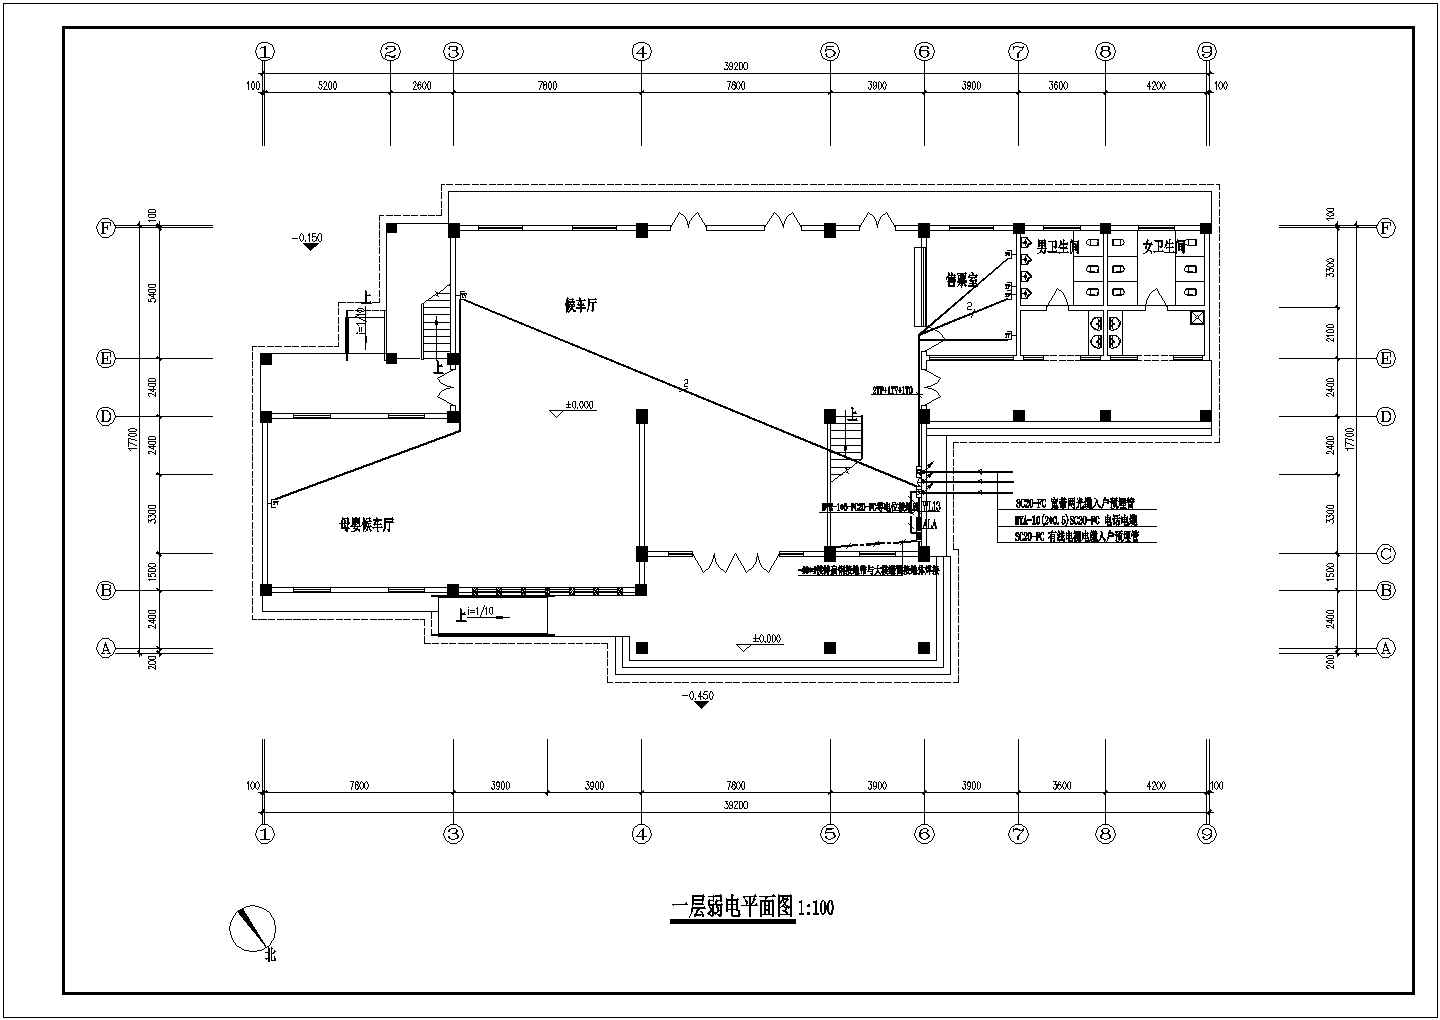 莫地区客运站电气设计施工方案图纸